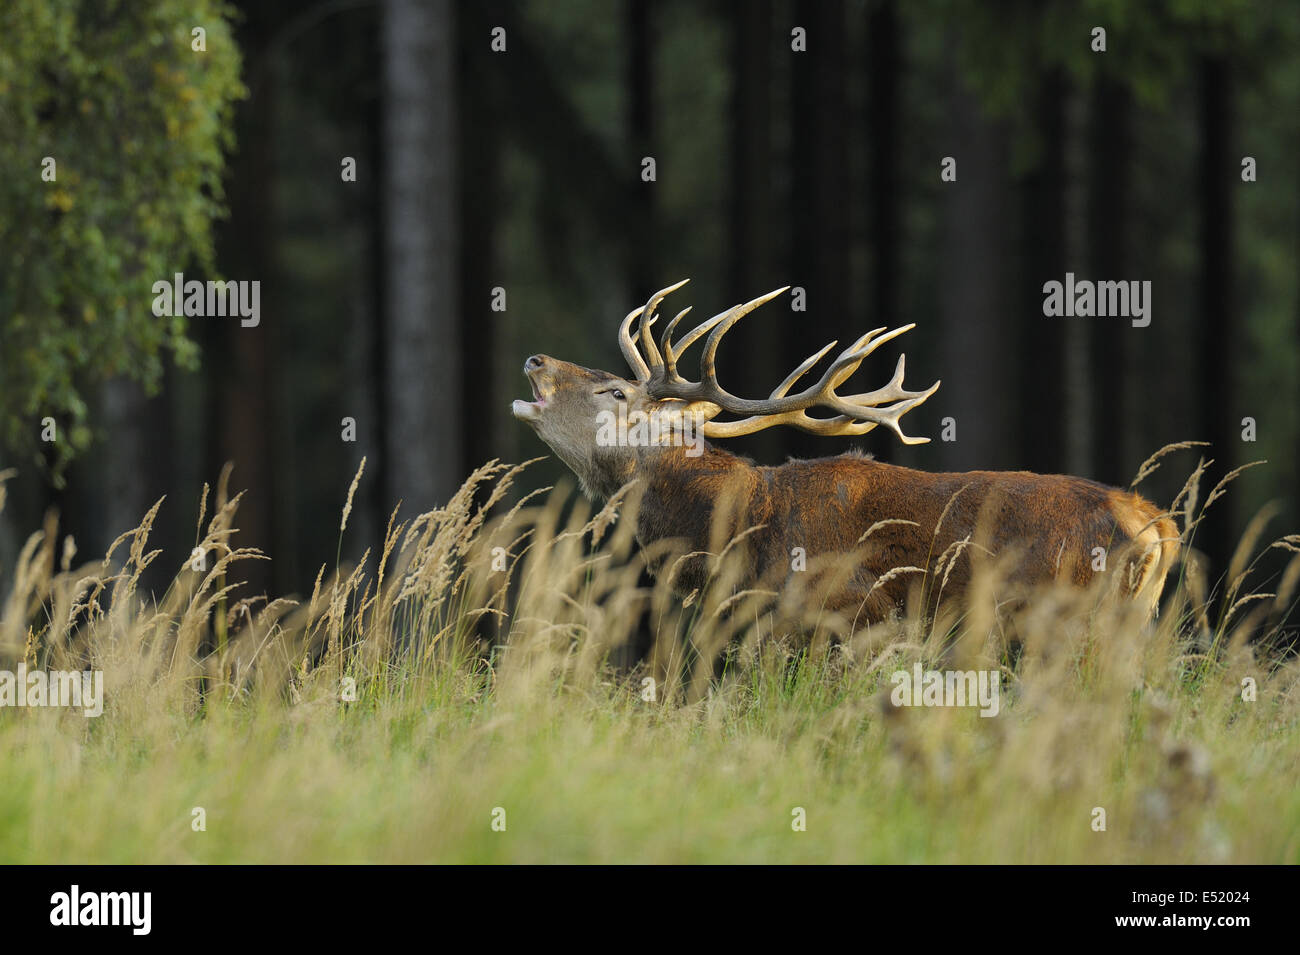 Red deer, Cervus elaphus, Germany Stock Photo